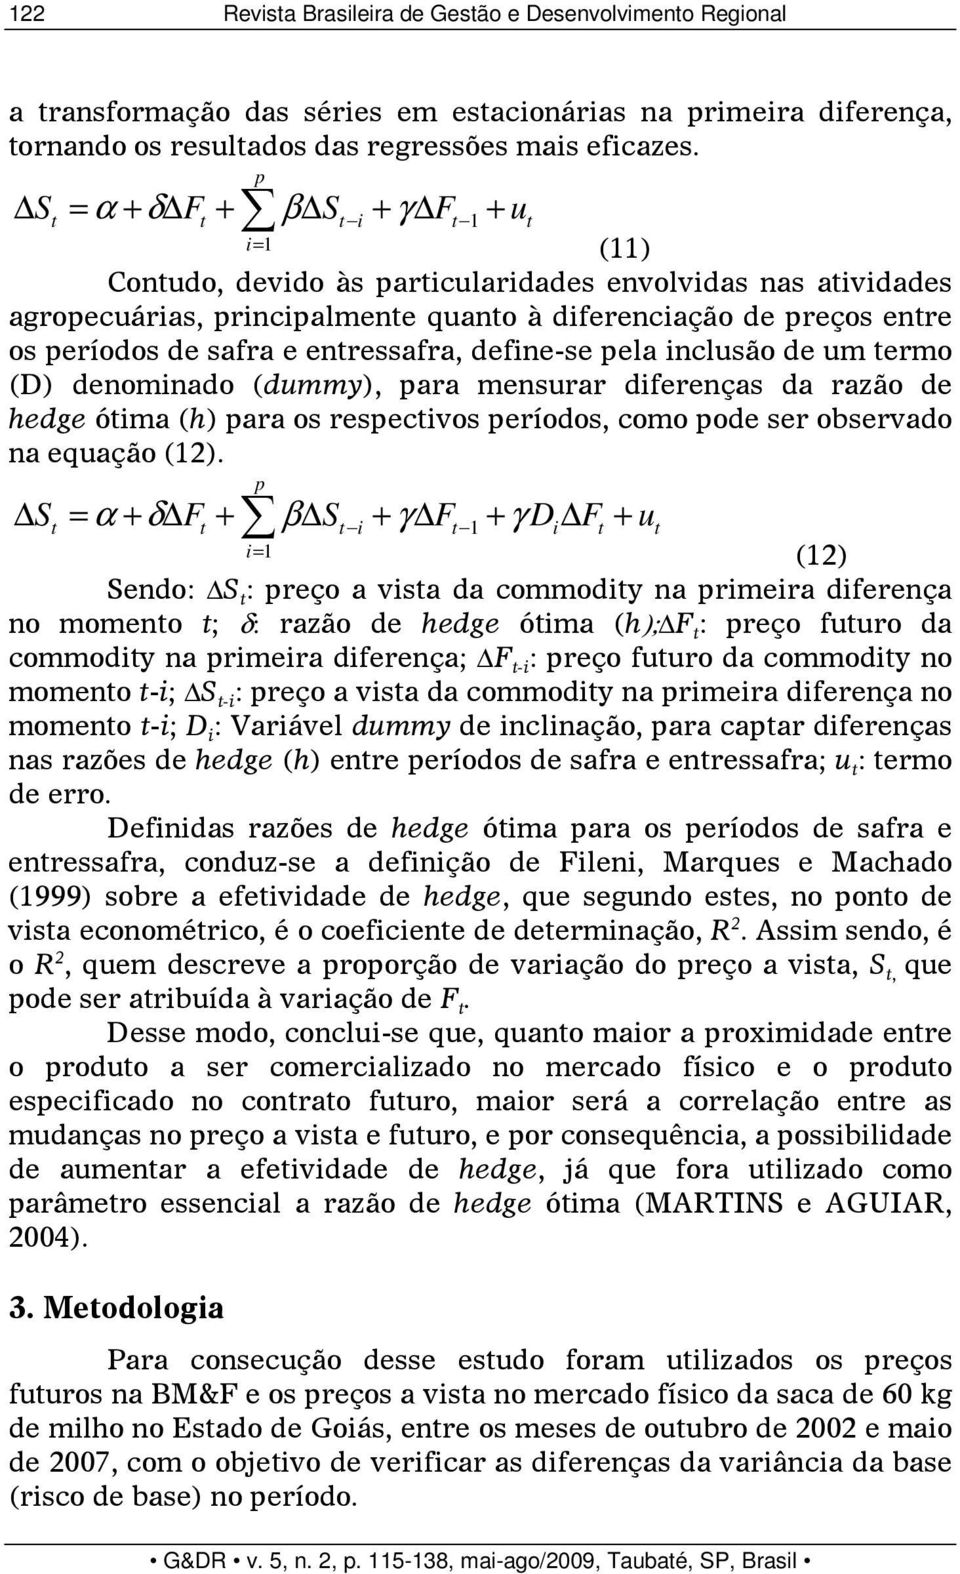 safra e entressafra, define-se pela inclusão de um termo (D) denominado (dummy), para mensurar diferenças da razão de hedge ótima (h) para os respectivos períodos, como pode ser observado na equação